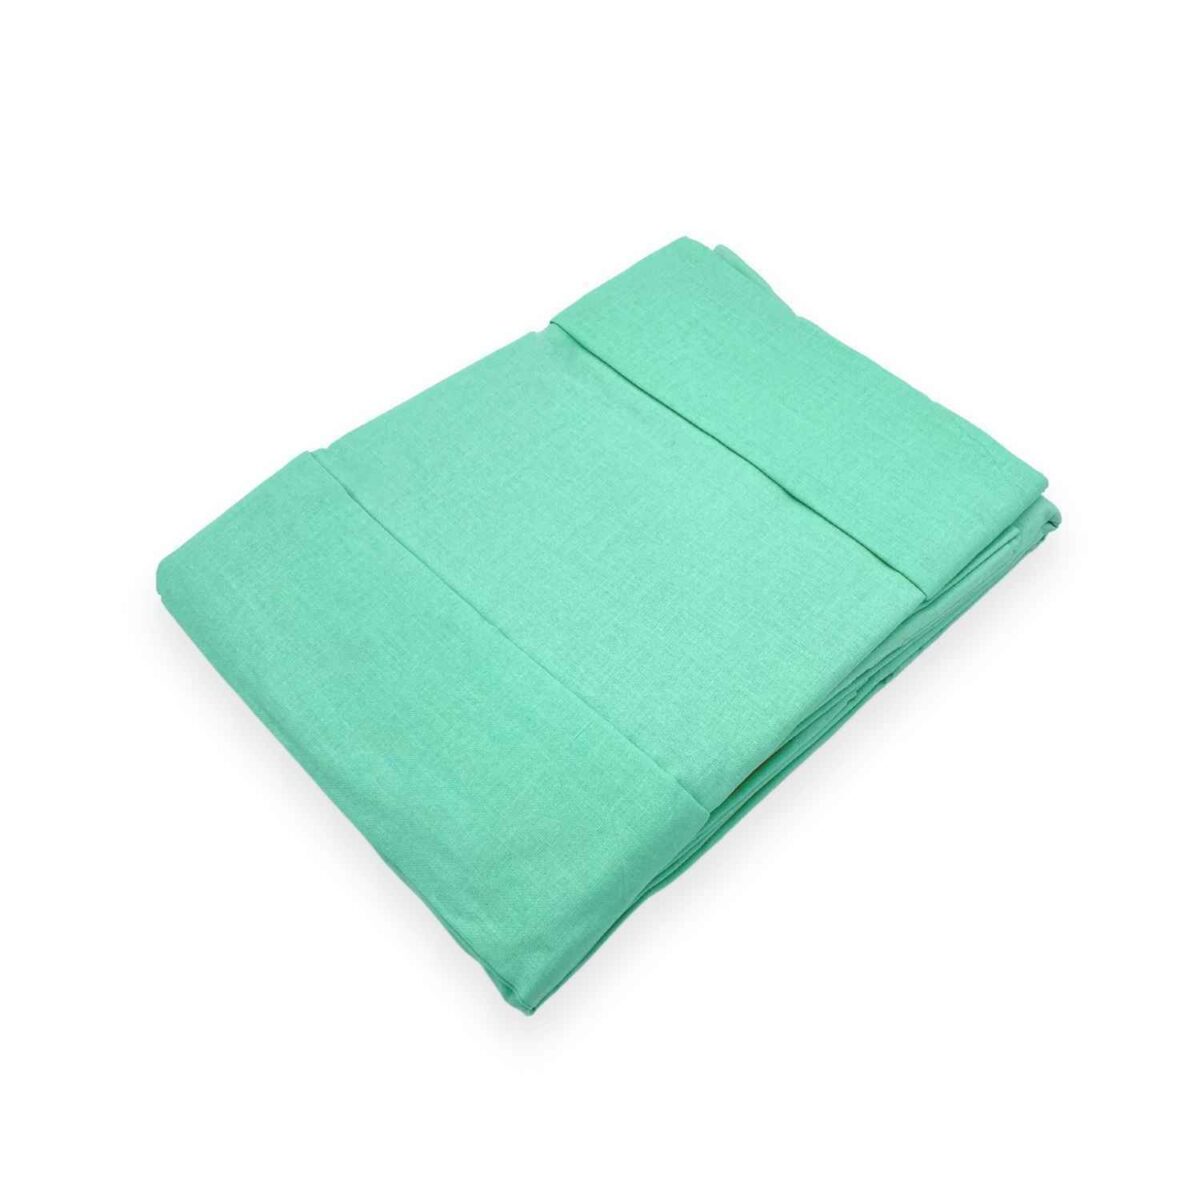 verde-coloratissimi-completo-lenzuola-puro-cotone-tinta-unita-verdino-acqua-fold